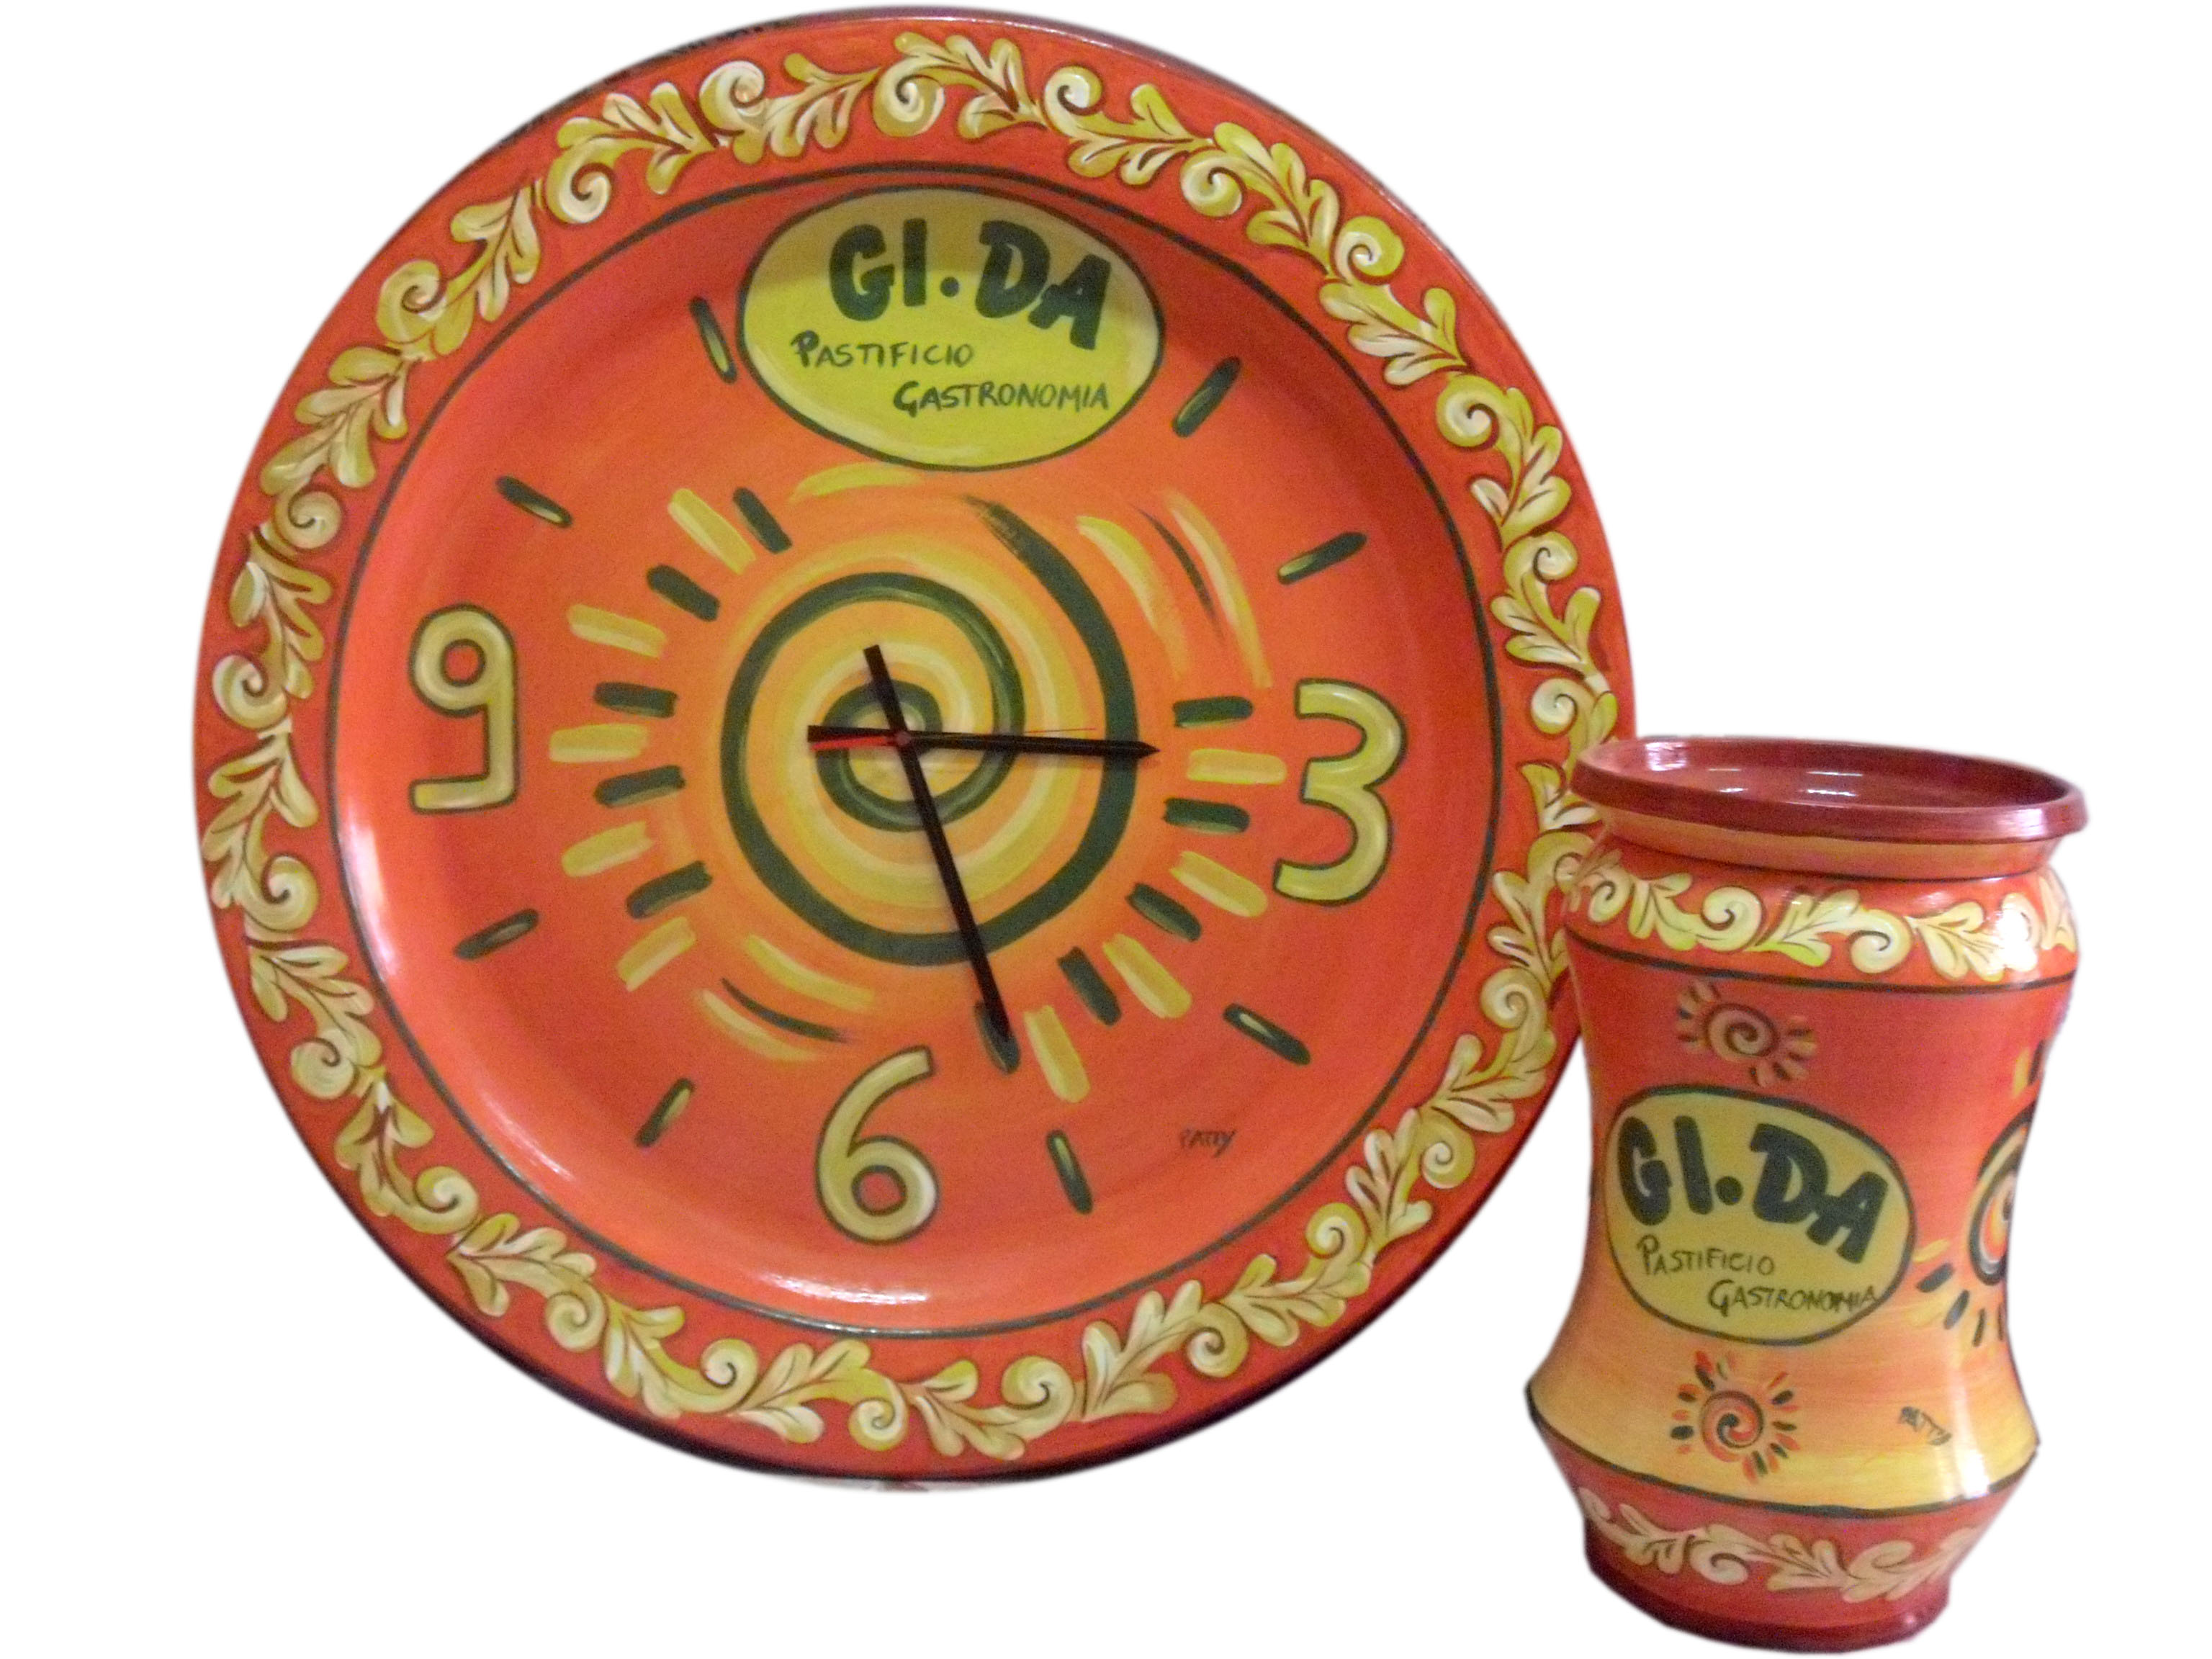 Piatto-orologia e barattolo, con logo personalizzato, GI.DA Pastificio e Gastronomia, a Palermo